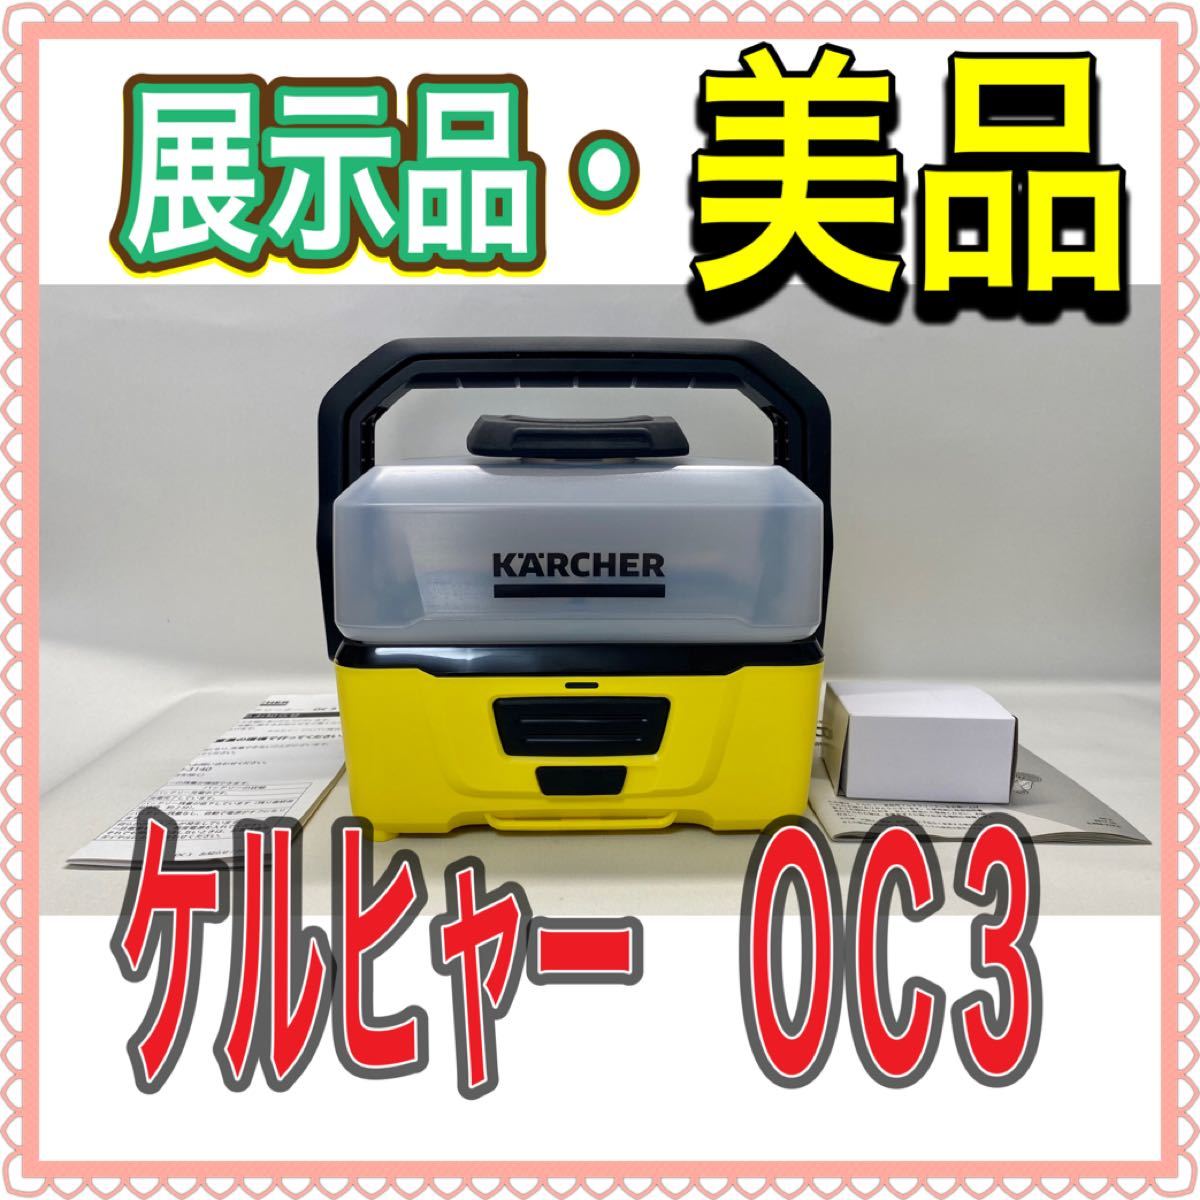 ケルヒャー(KARCHER) モバイルマルチクリーナー OC3 1.680-009.0 [旧モデル] バッテリー内蔵